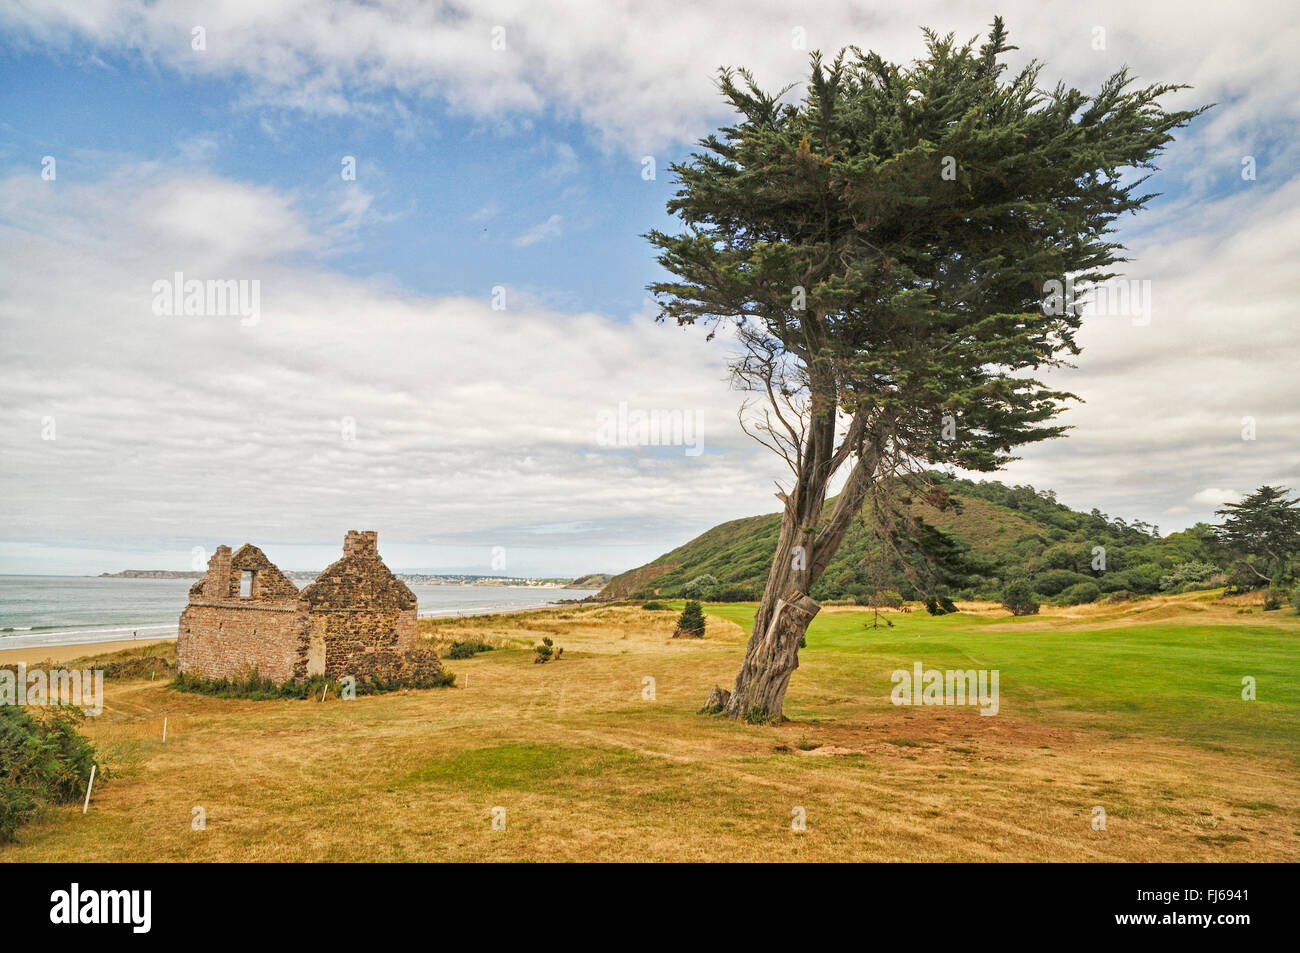 Zypressen (Cupressus spec.), Ruine und einzelne Baum auf Golfplatz in der Nähe von Strand, Frankreich, Bretagne, D Partement C Tes-d Rüstung, Pl Neuf-Val-Andr Stockfoto